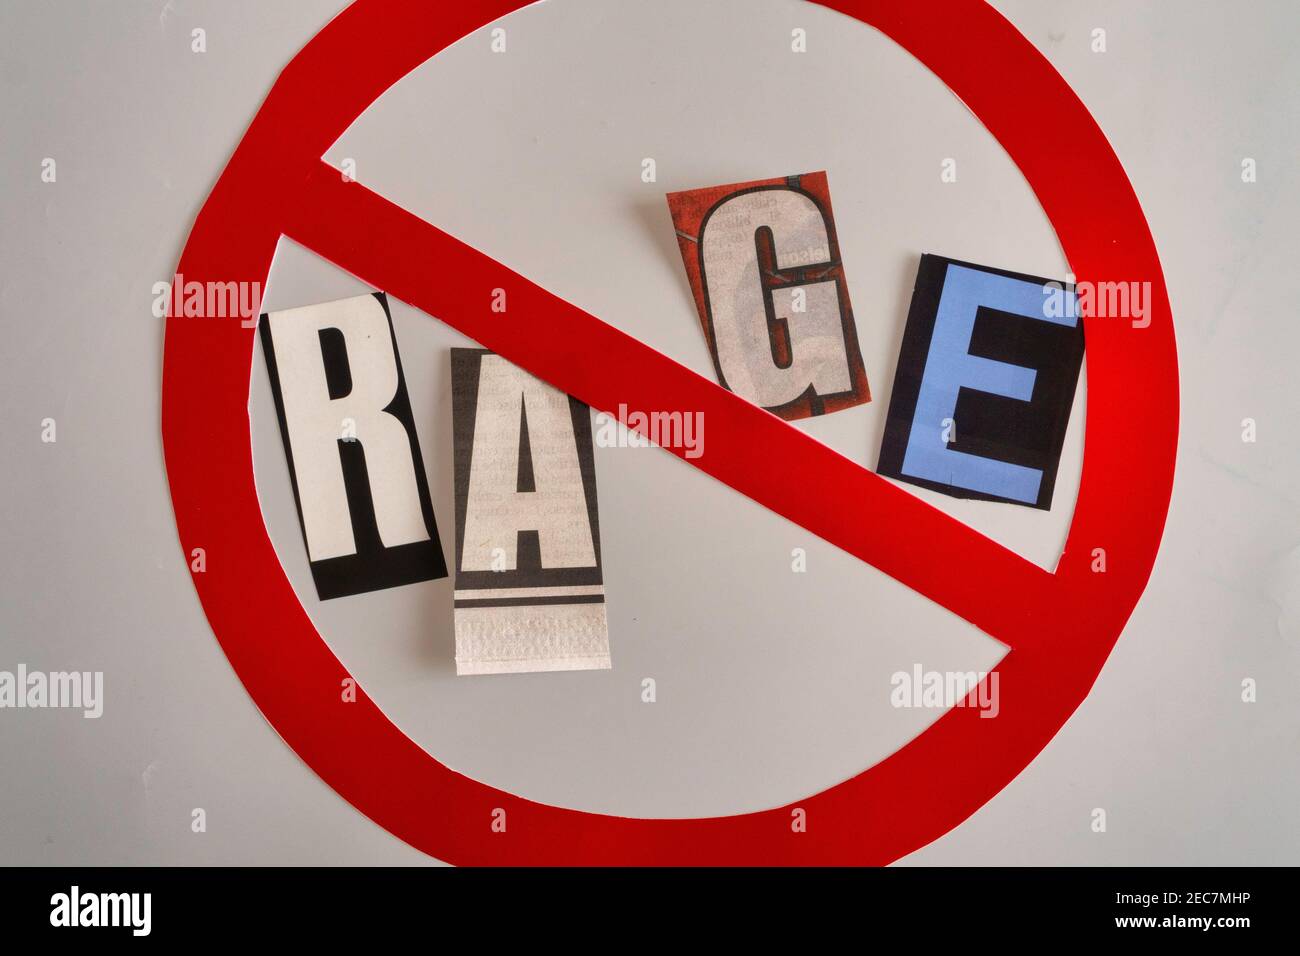 El concepto de 'Cancelar Rage' usando letras de papel recortadas en la tipografía del efecto de la nota del rescate dentro del símbolo INTERNACIONAL DE NO, EE.UU Foto de stock